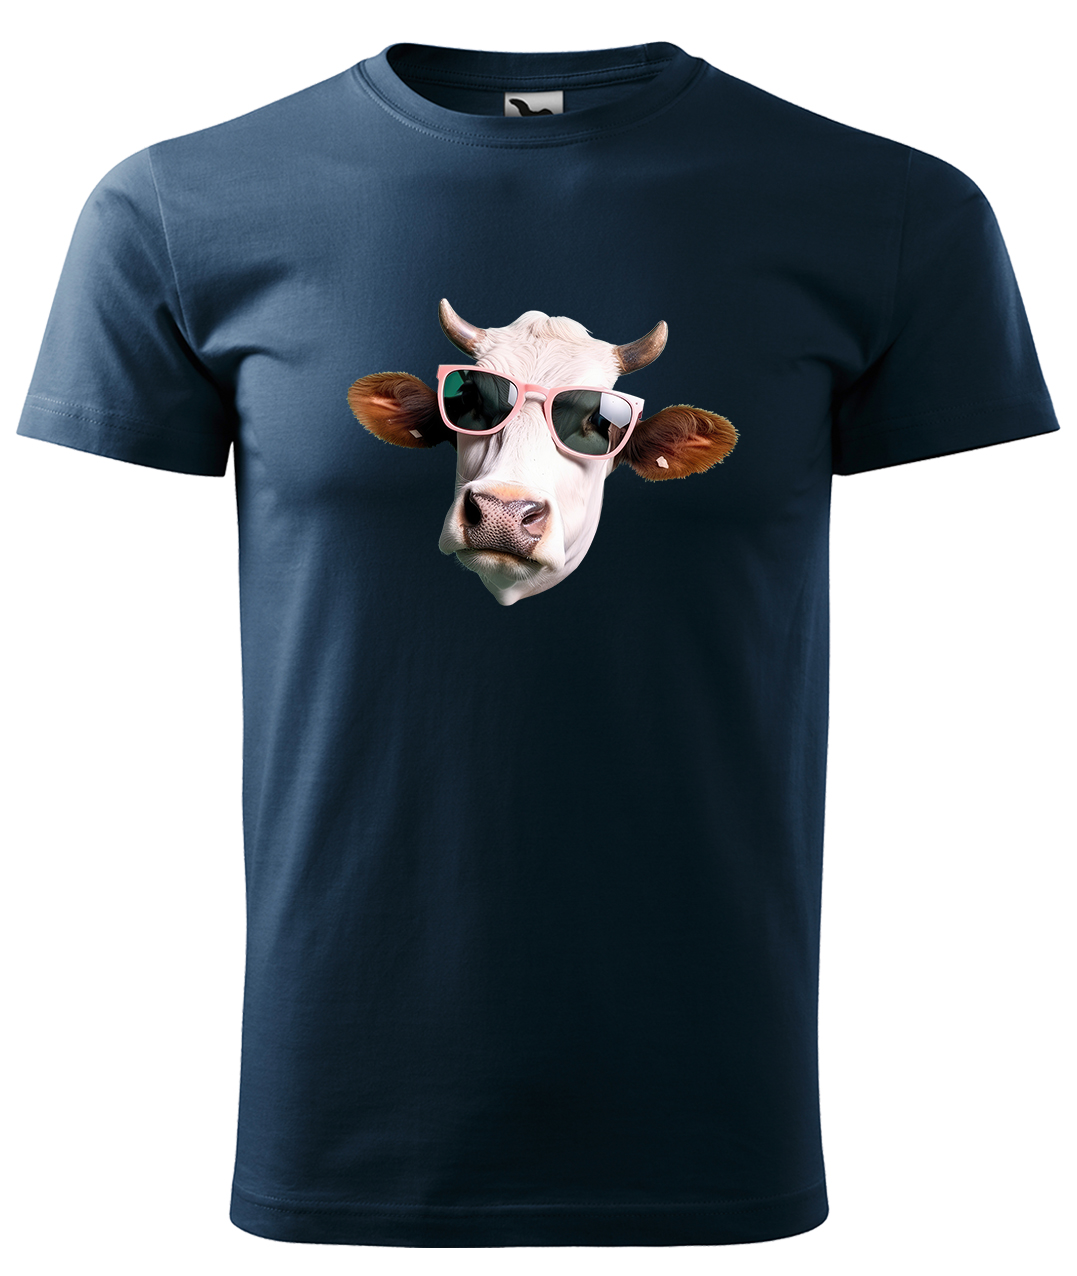 Dětské tričko s krávou - Kráva v brýlích Velikost: 8 let / 134 cm, Barva: Námořní modrá (02), Délka rukávu: Krátký rukáv